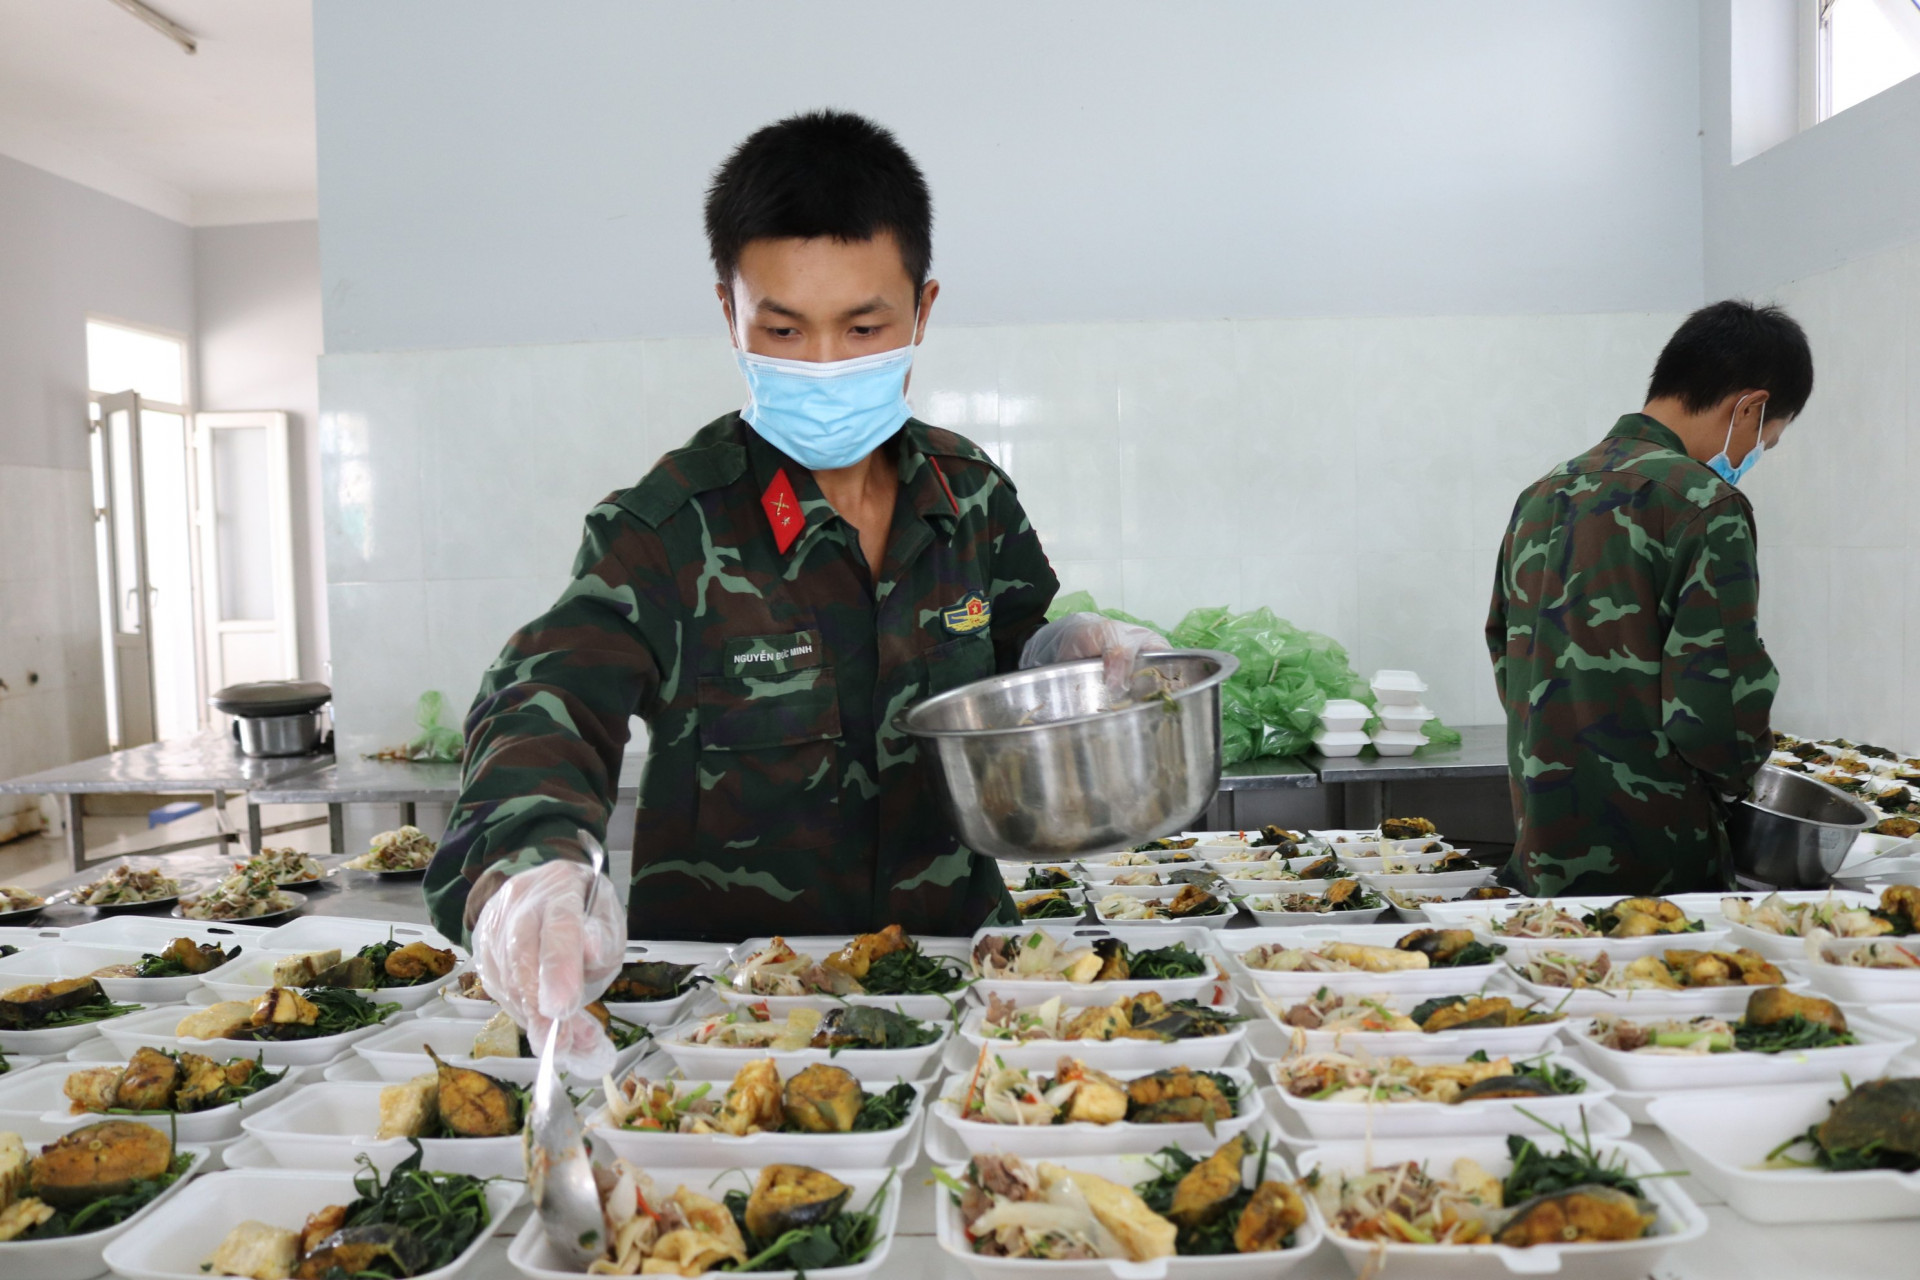 Các chiến sĩ chia cơm và thức ăn vào hộp cho người dân ở khu cách ly.